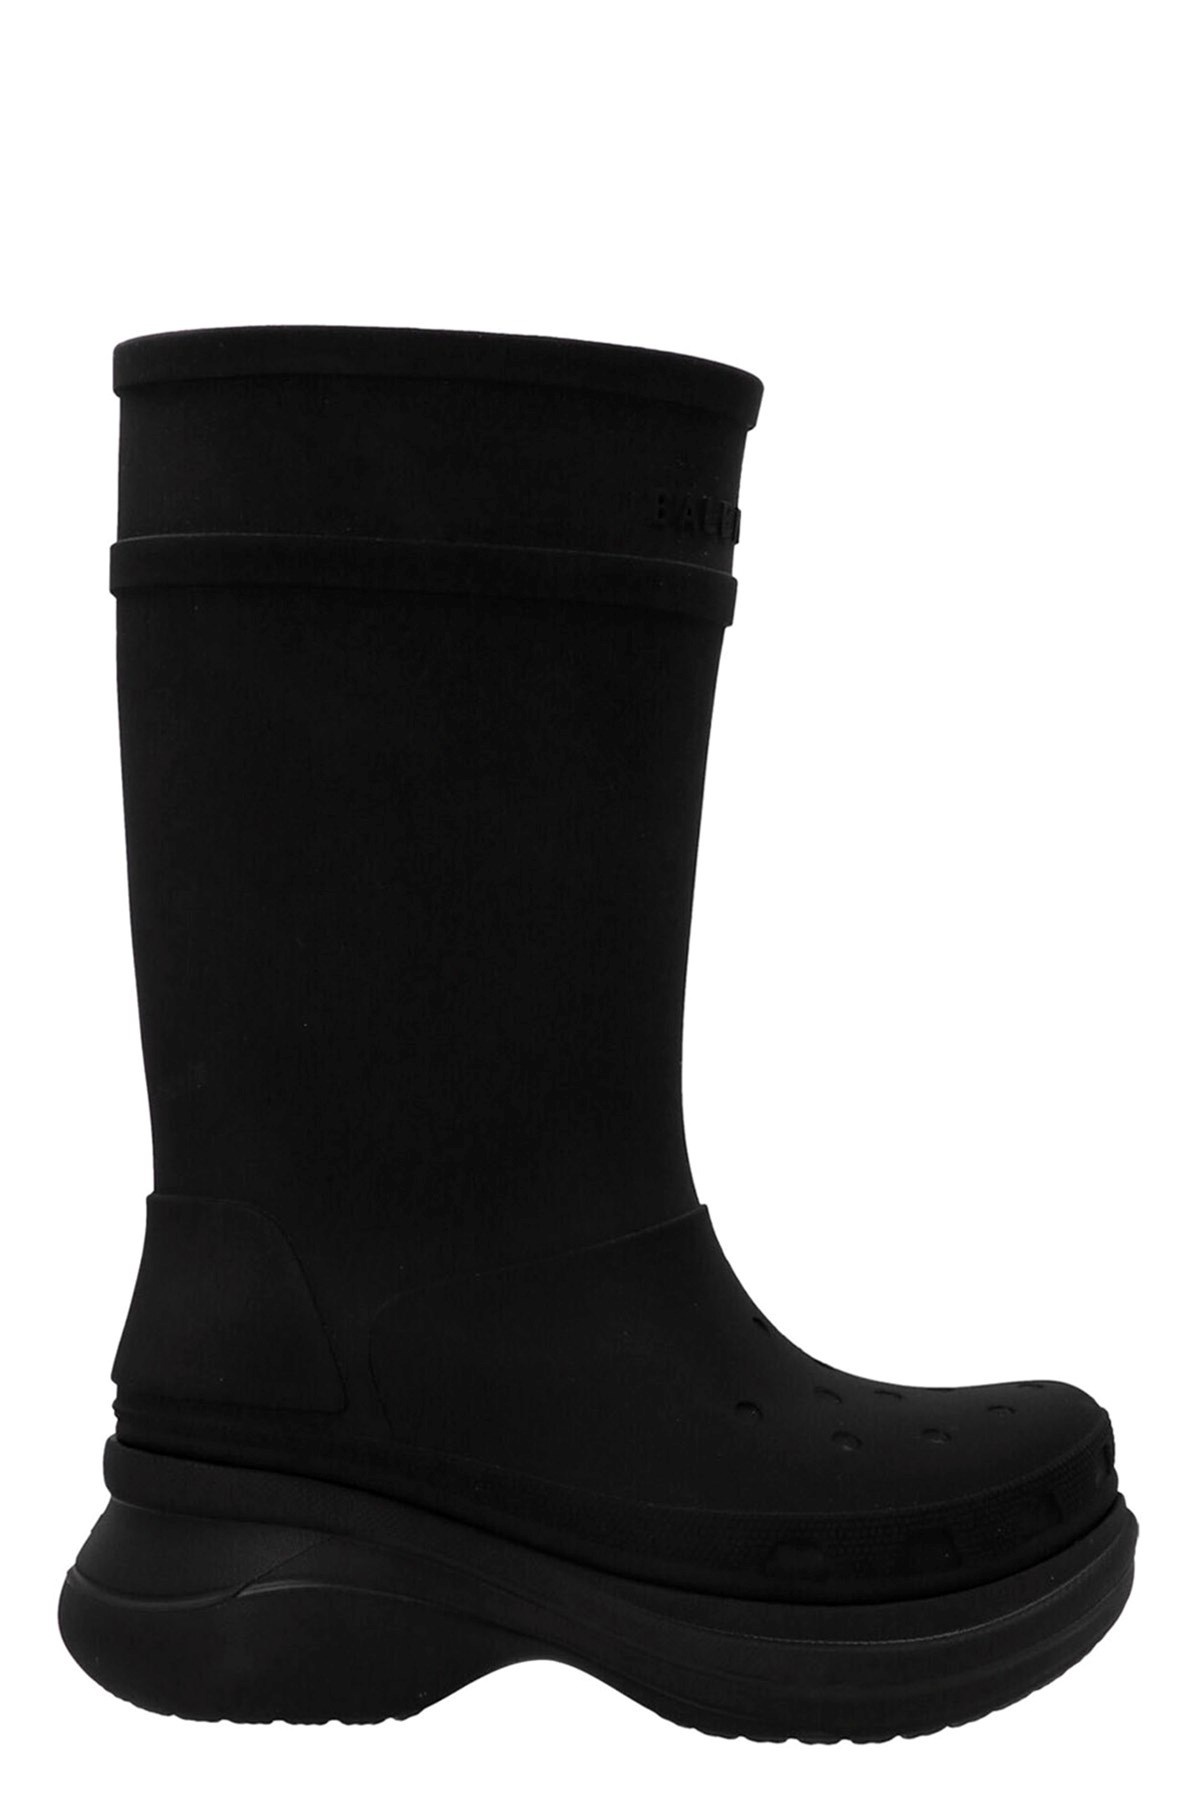 Balenciaga x Crocs boots - 1